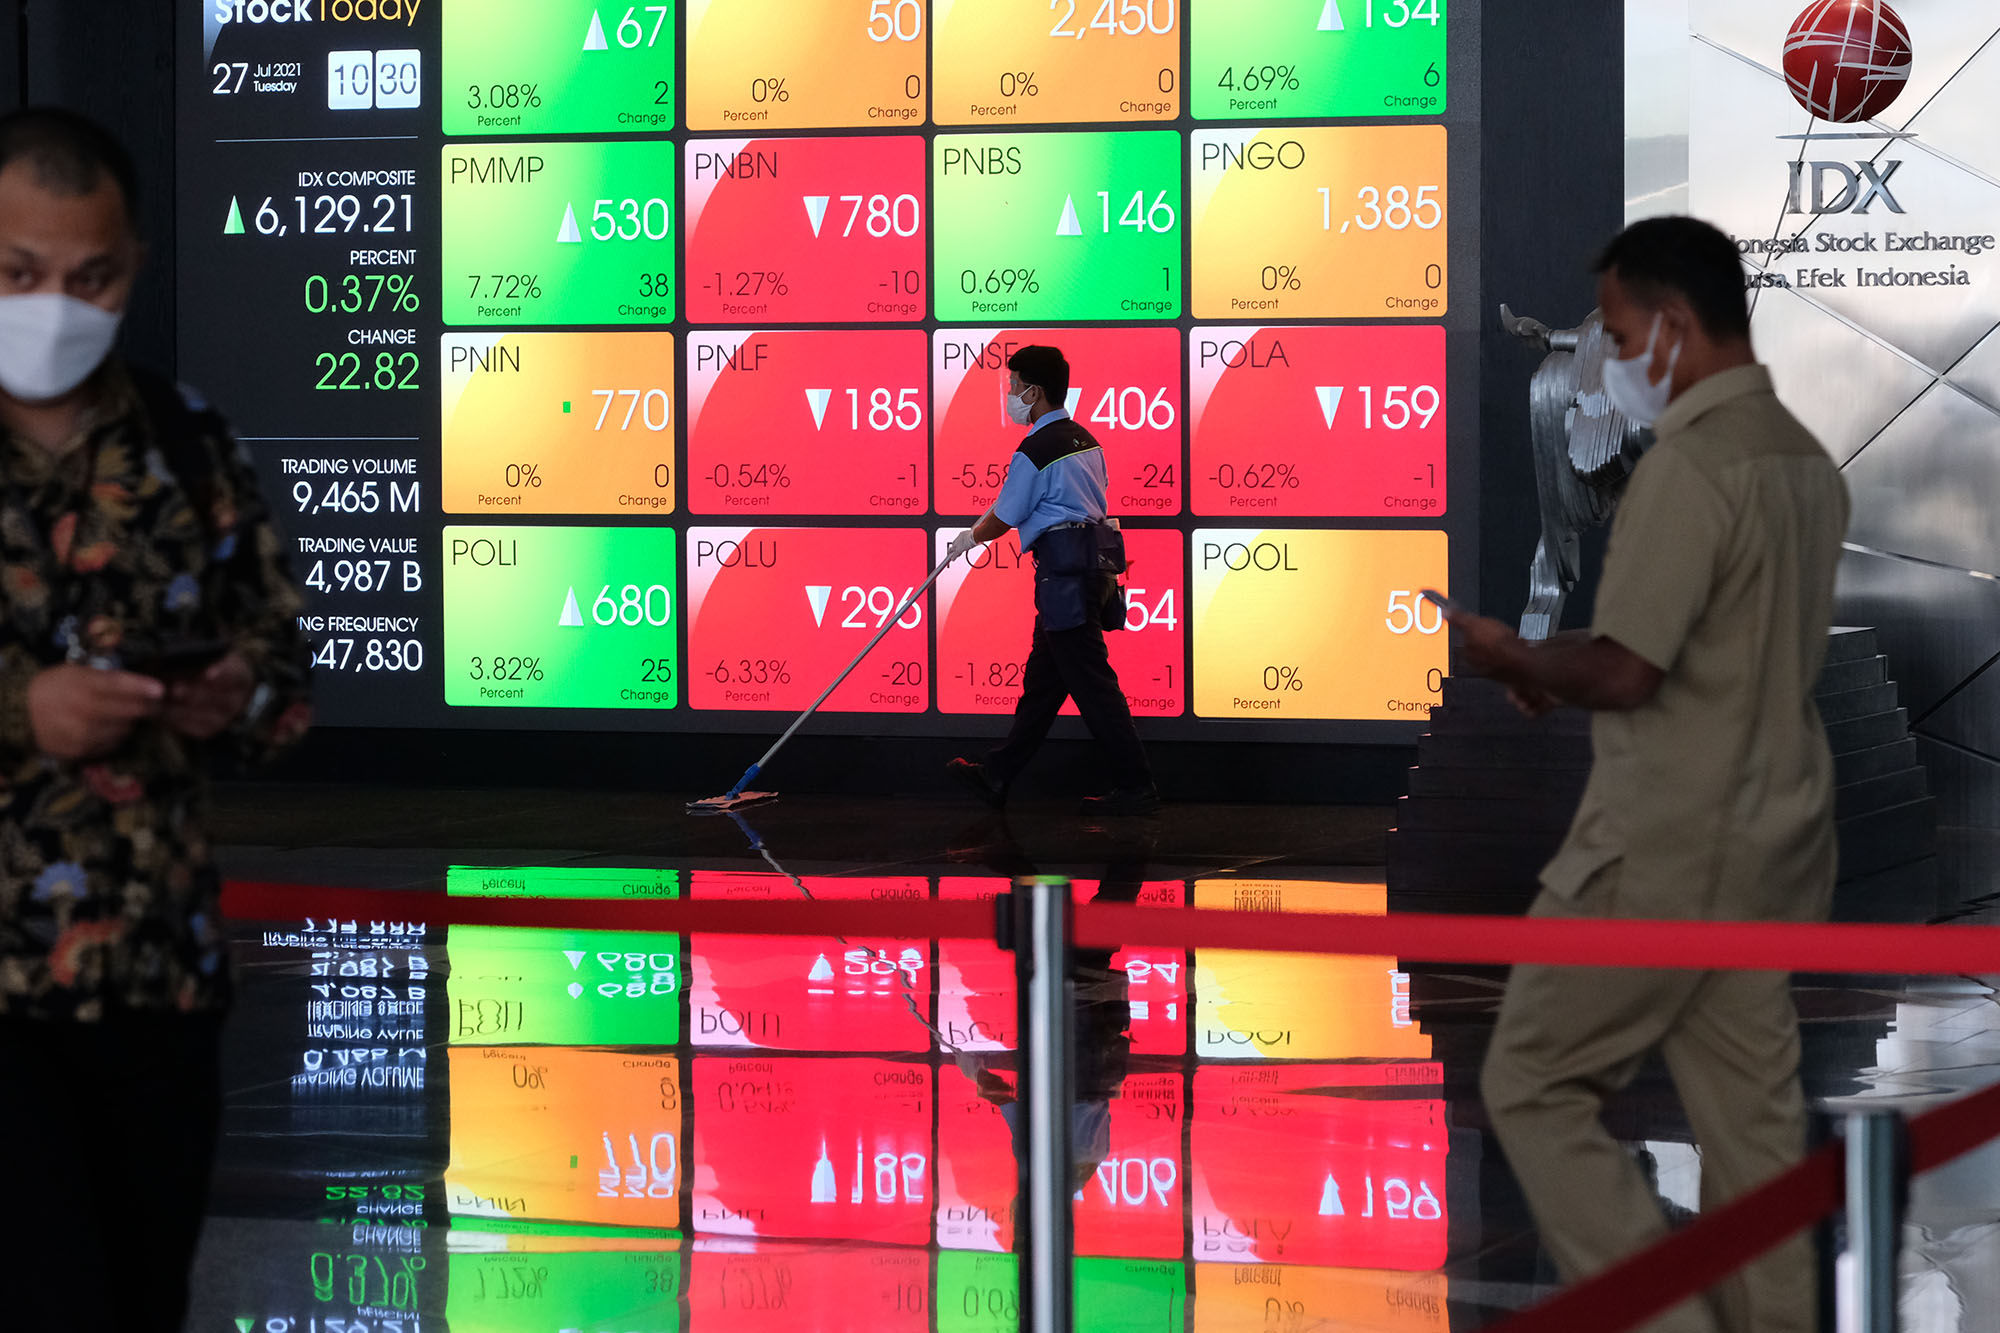 Karyawan melintas dengan latar layar pergerakan indeks harga saham gabungan (IHSG) di gedung Bursa Efek Indonesia (BEI) Jakarta, Selasa, 27 Juli 2021. Foto: Ismail Pohan/TrenAsia